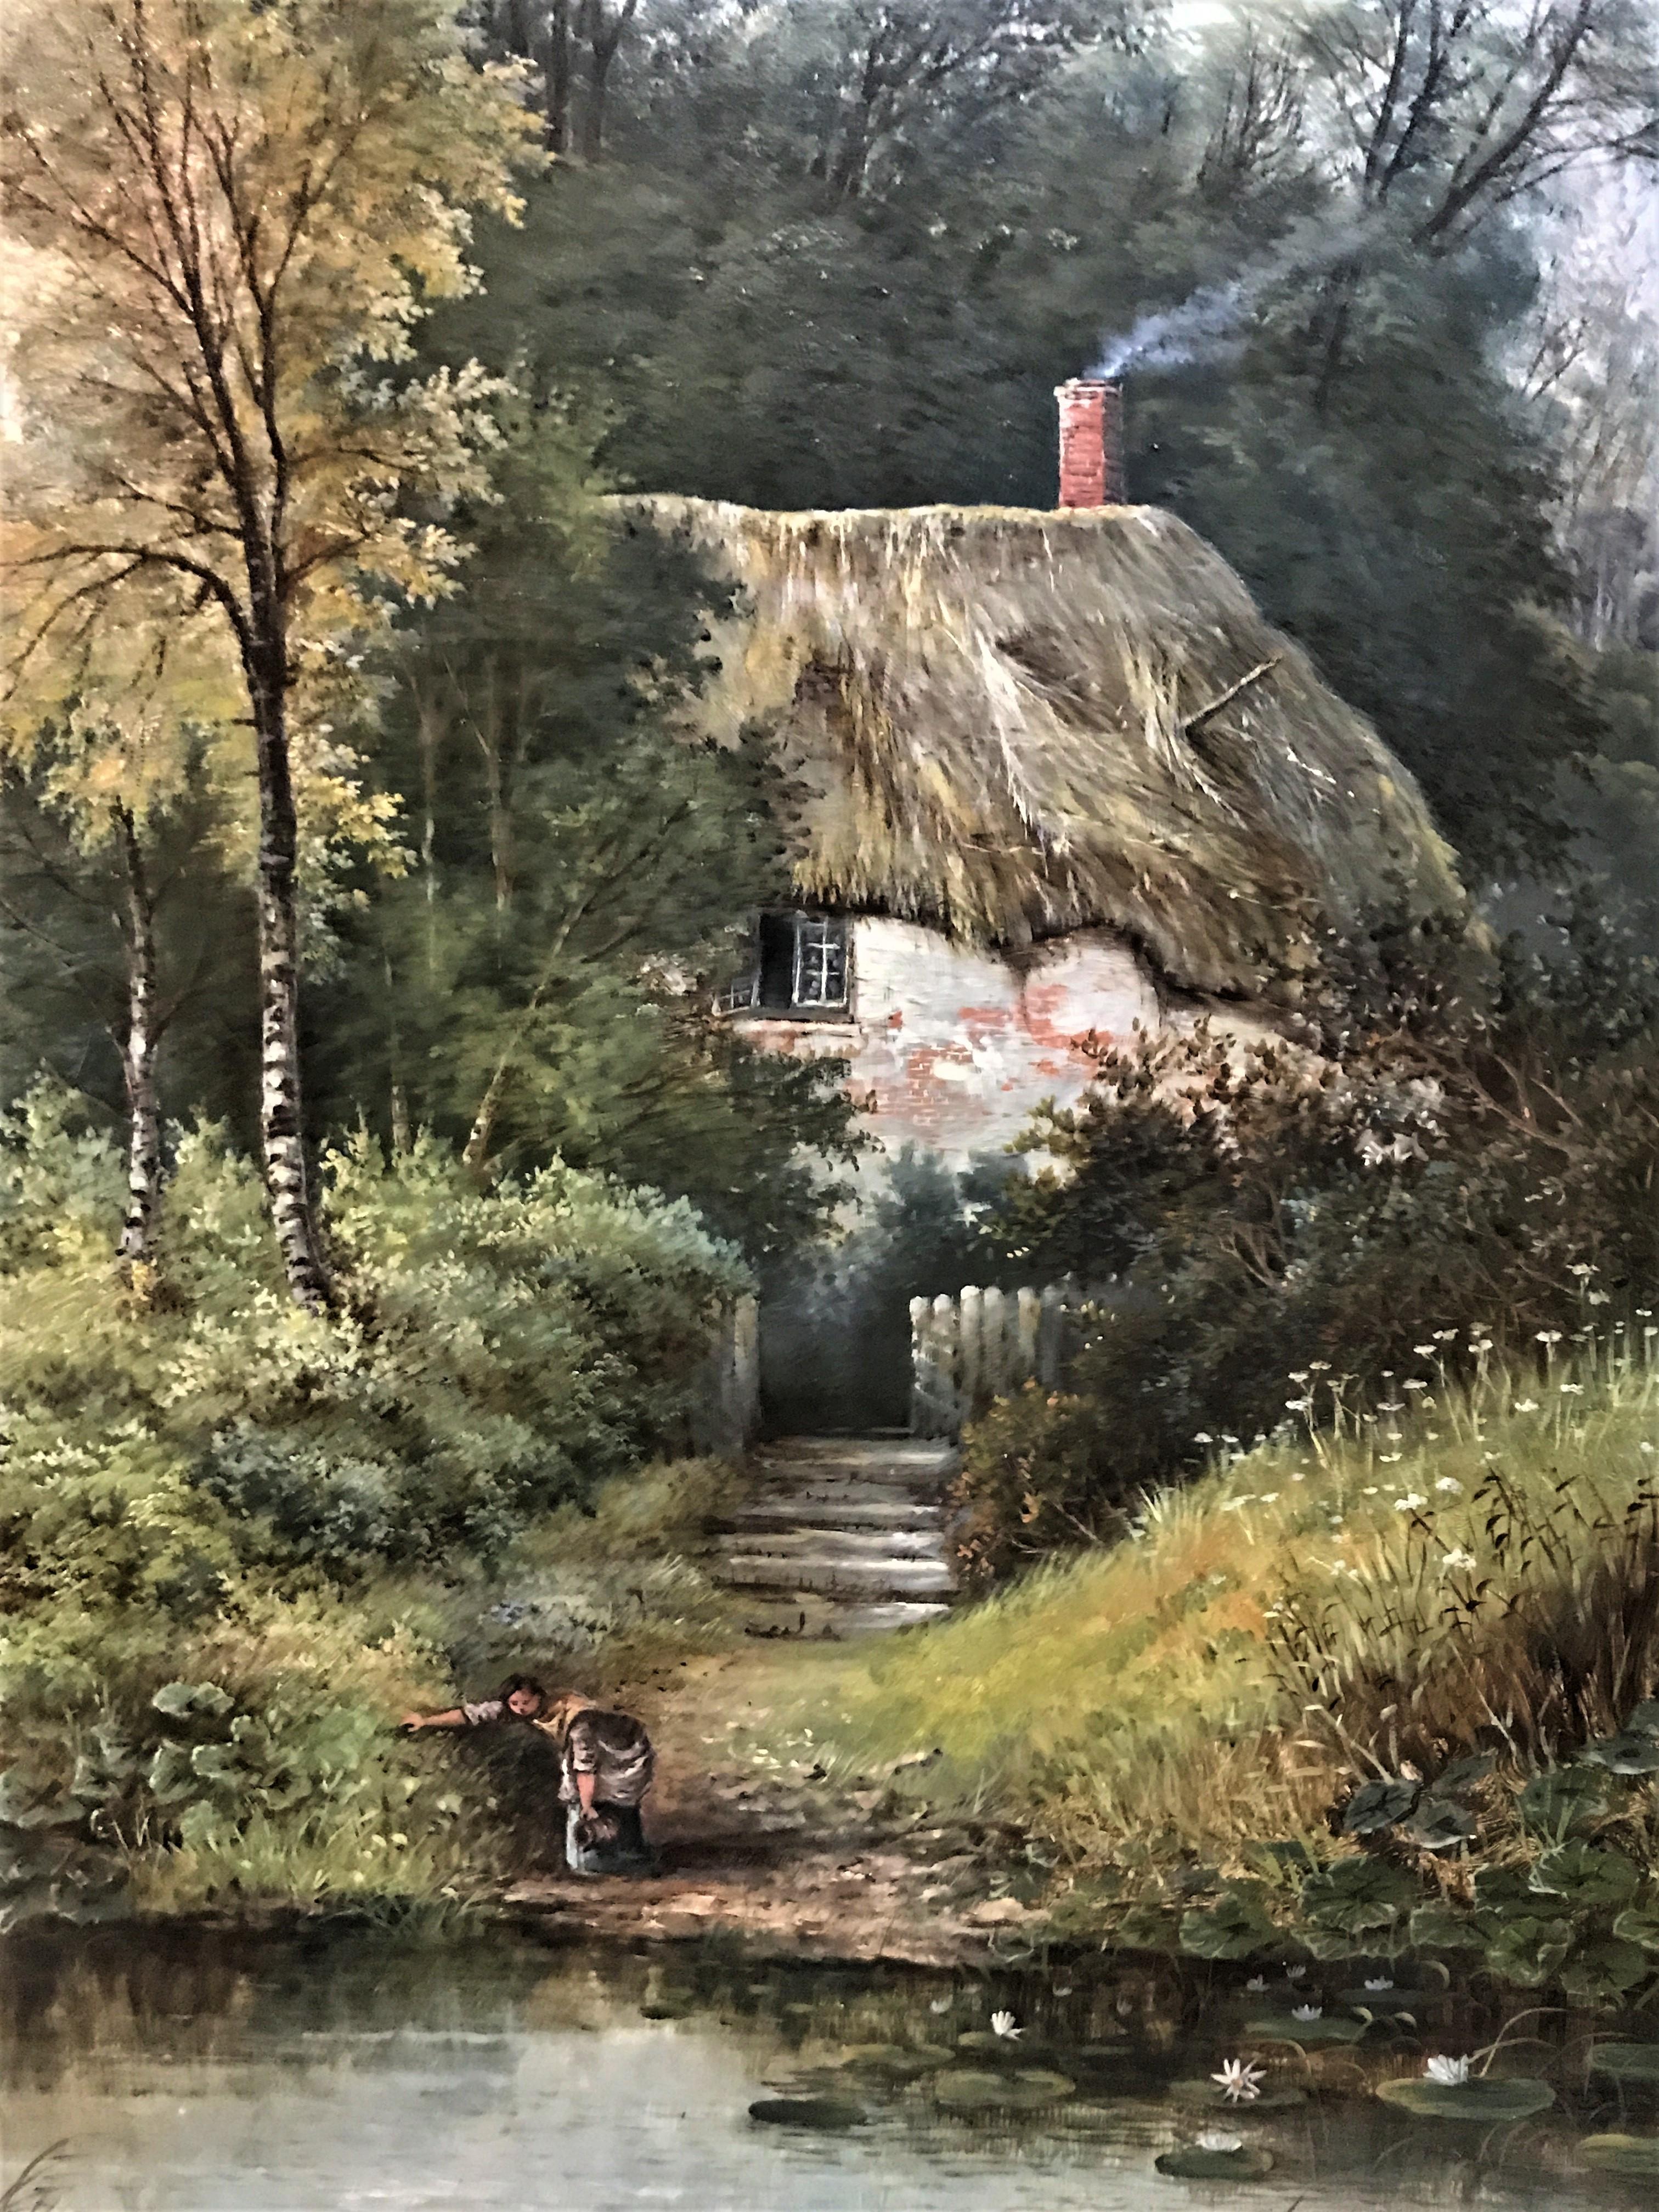 Chalet rural au bord d'un ruisseau, 19e siècle, signé par un artiste English, huile sur toile originale - École anglaise Painting par O J Clark